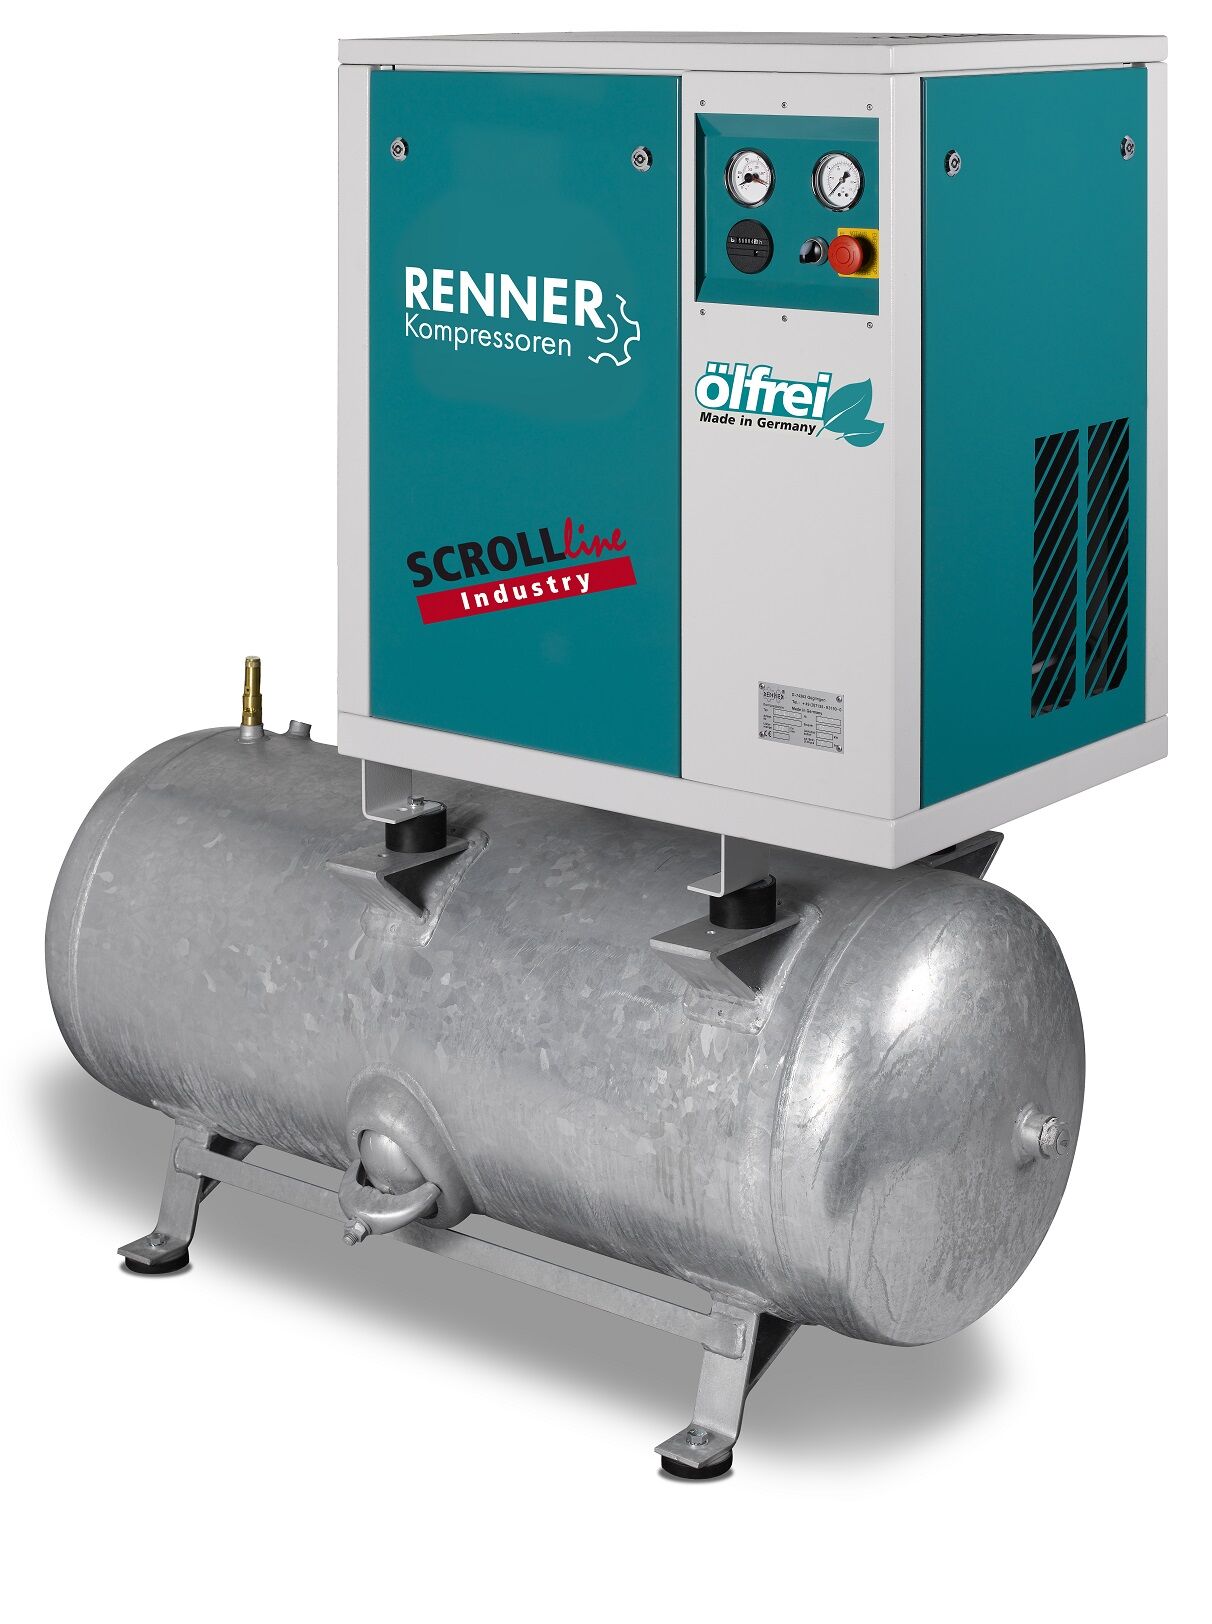 RENNER-Kompressor SLD-I 2,2 auf 250 Liter Druckbehälter - Industry ölfreier Scrollkompressor